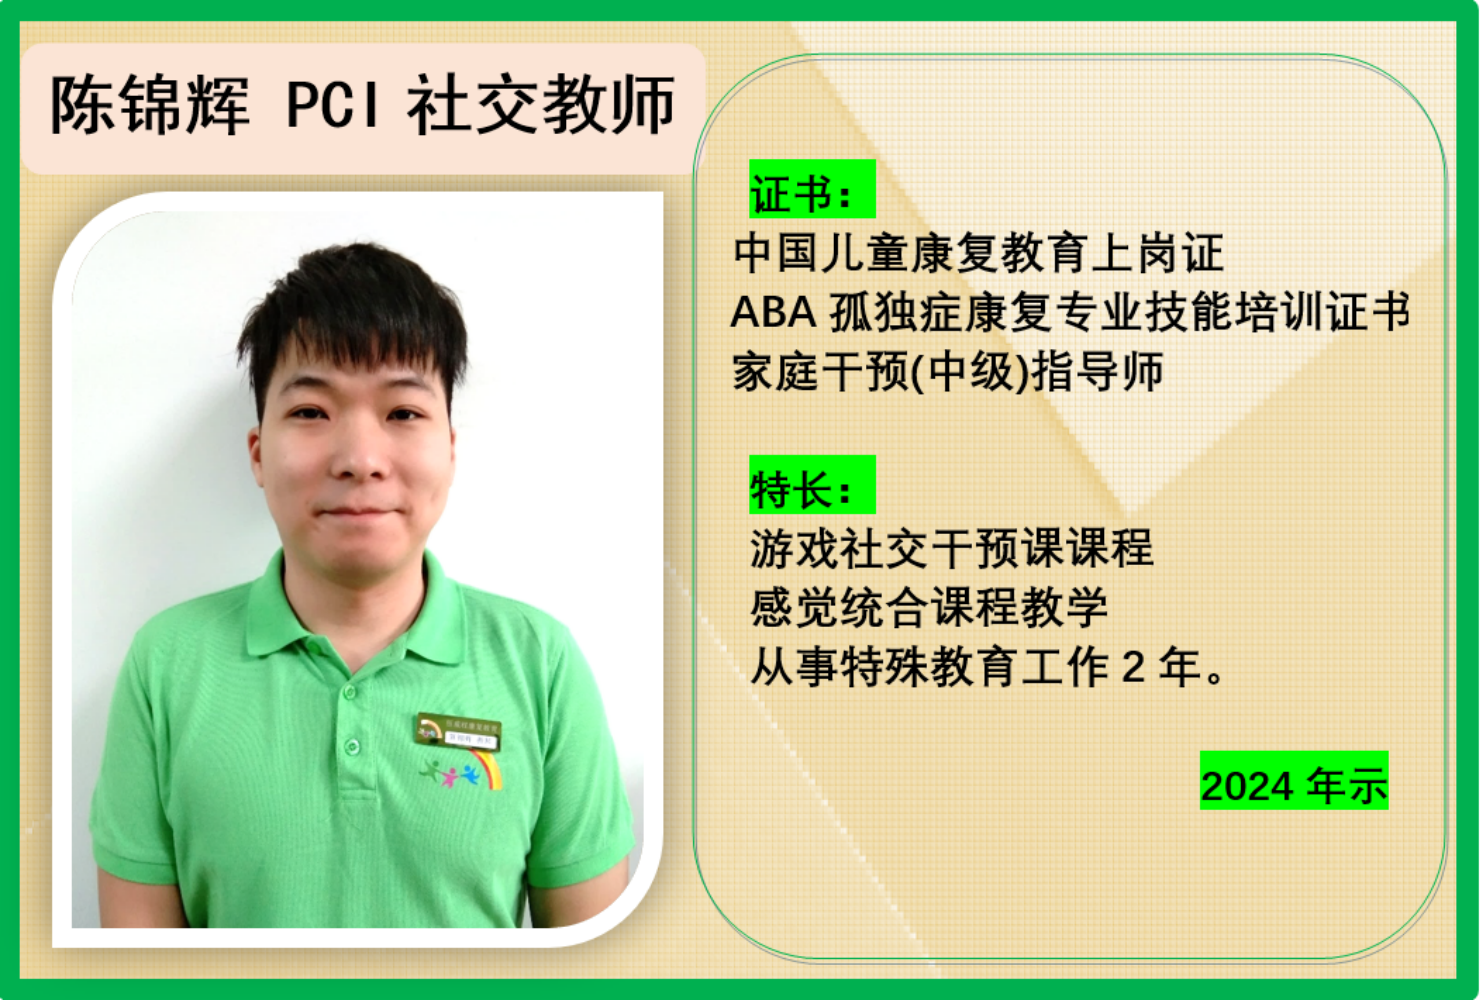 陈锦辉 PCI 社交教师